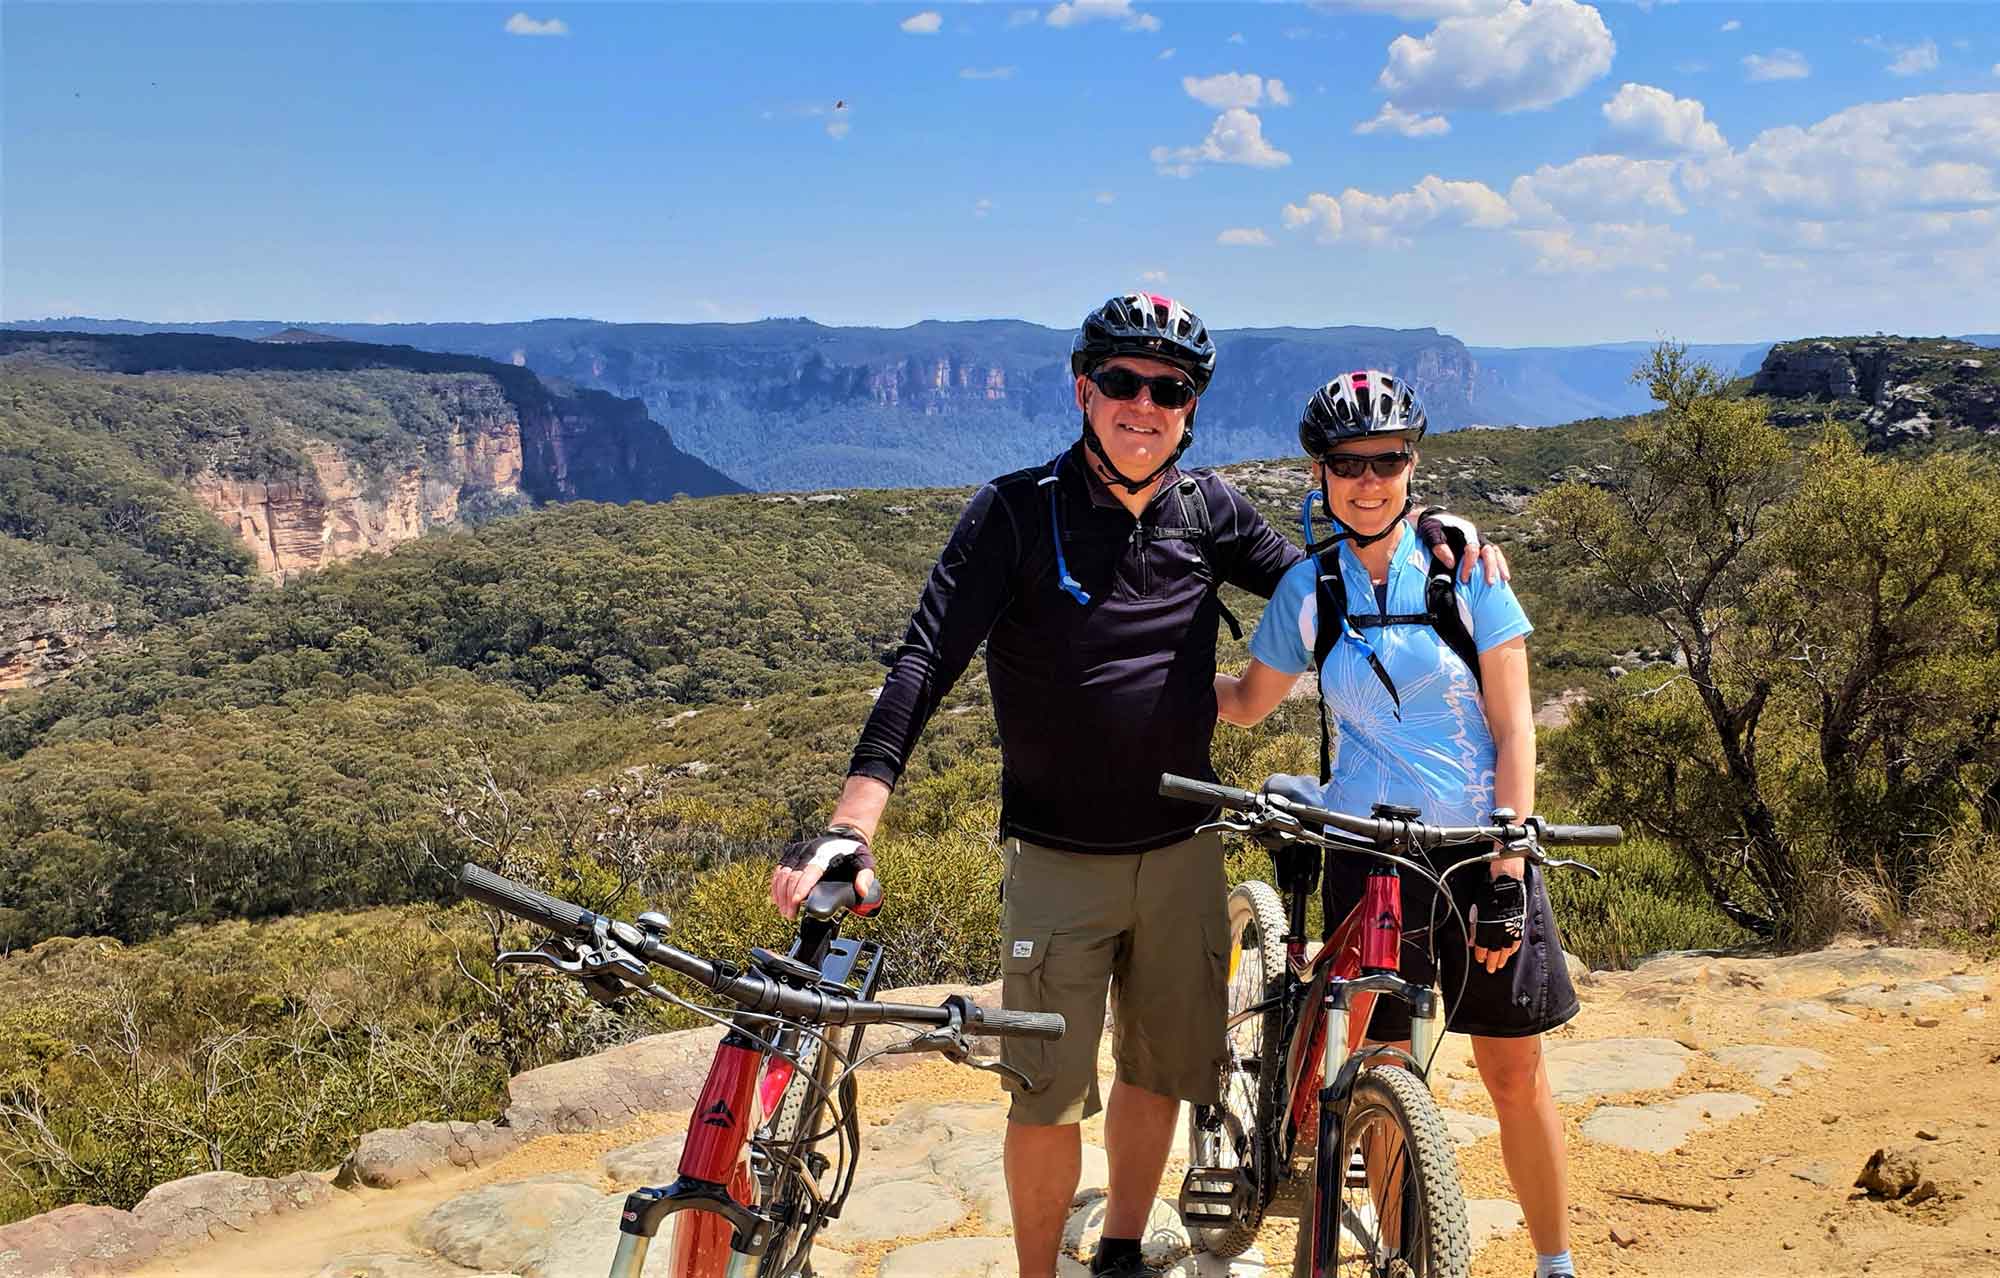 Mountain biking & cycling, Outdoor activities